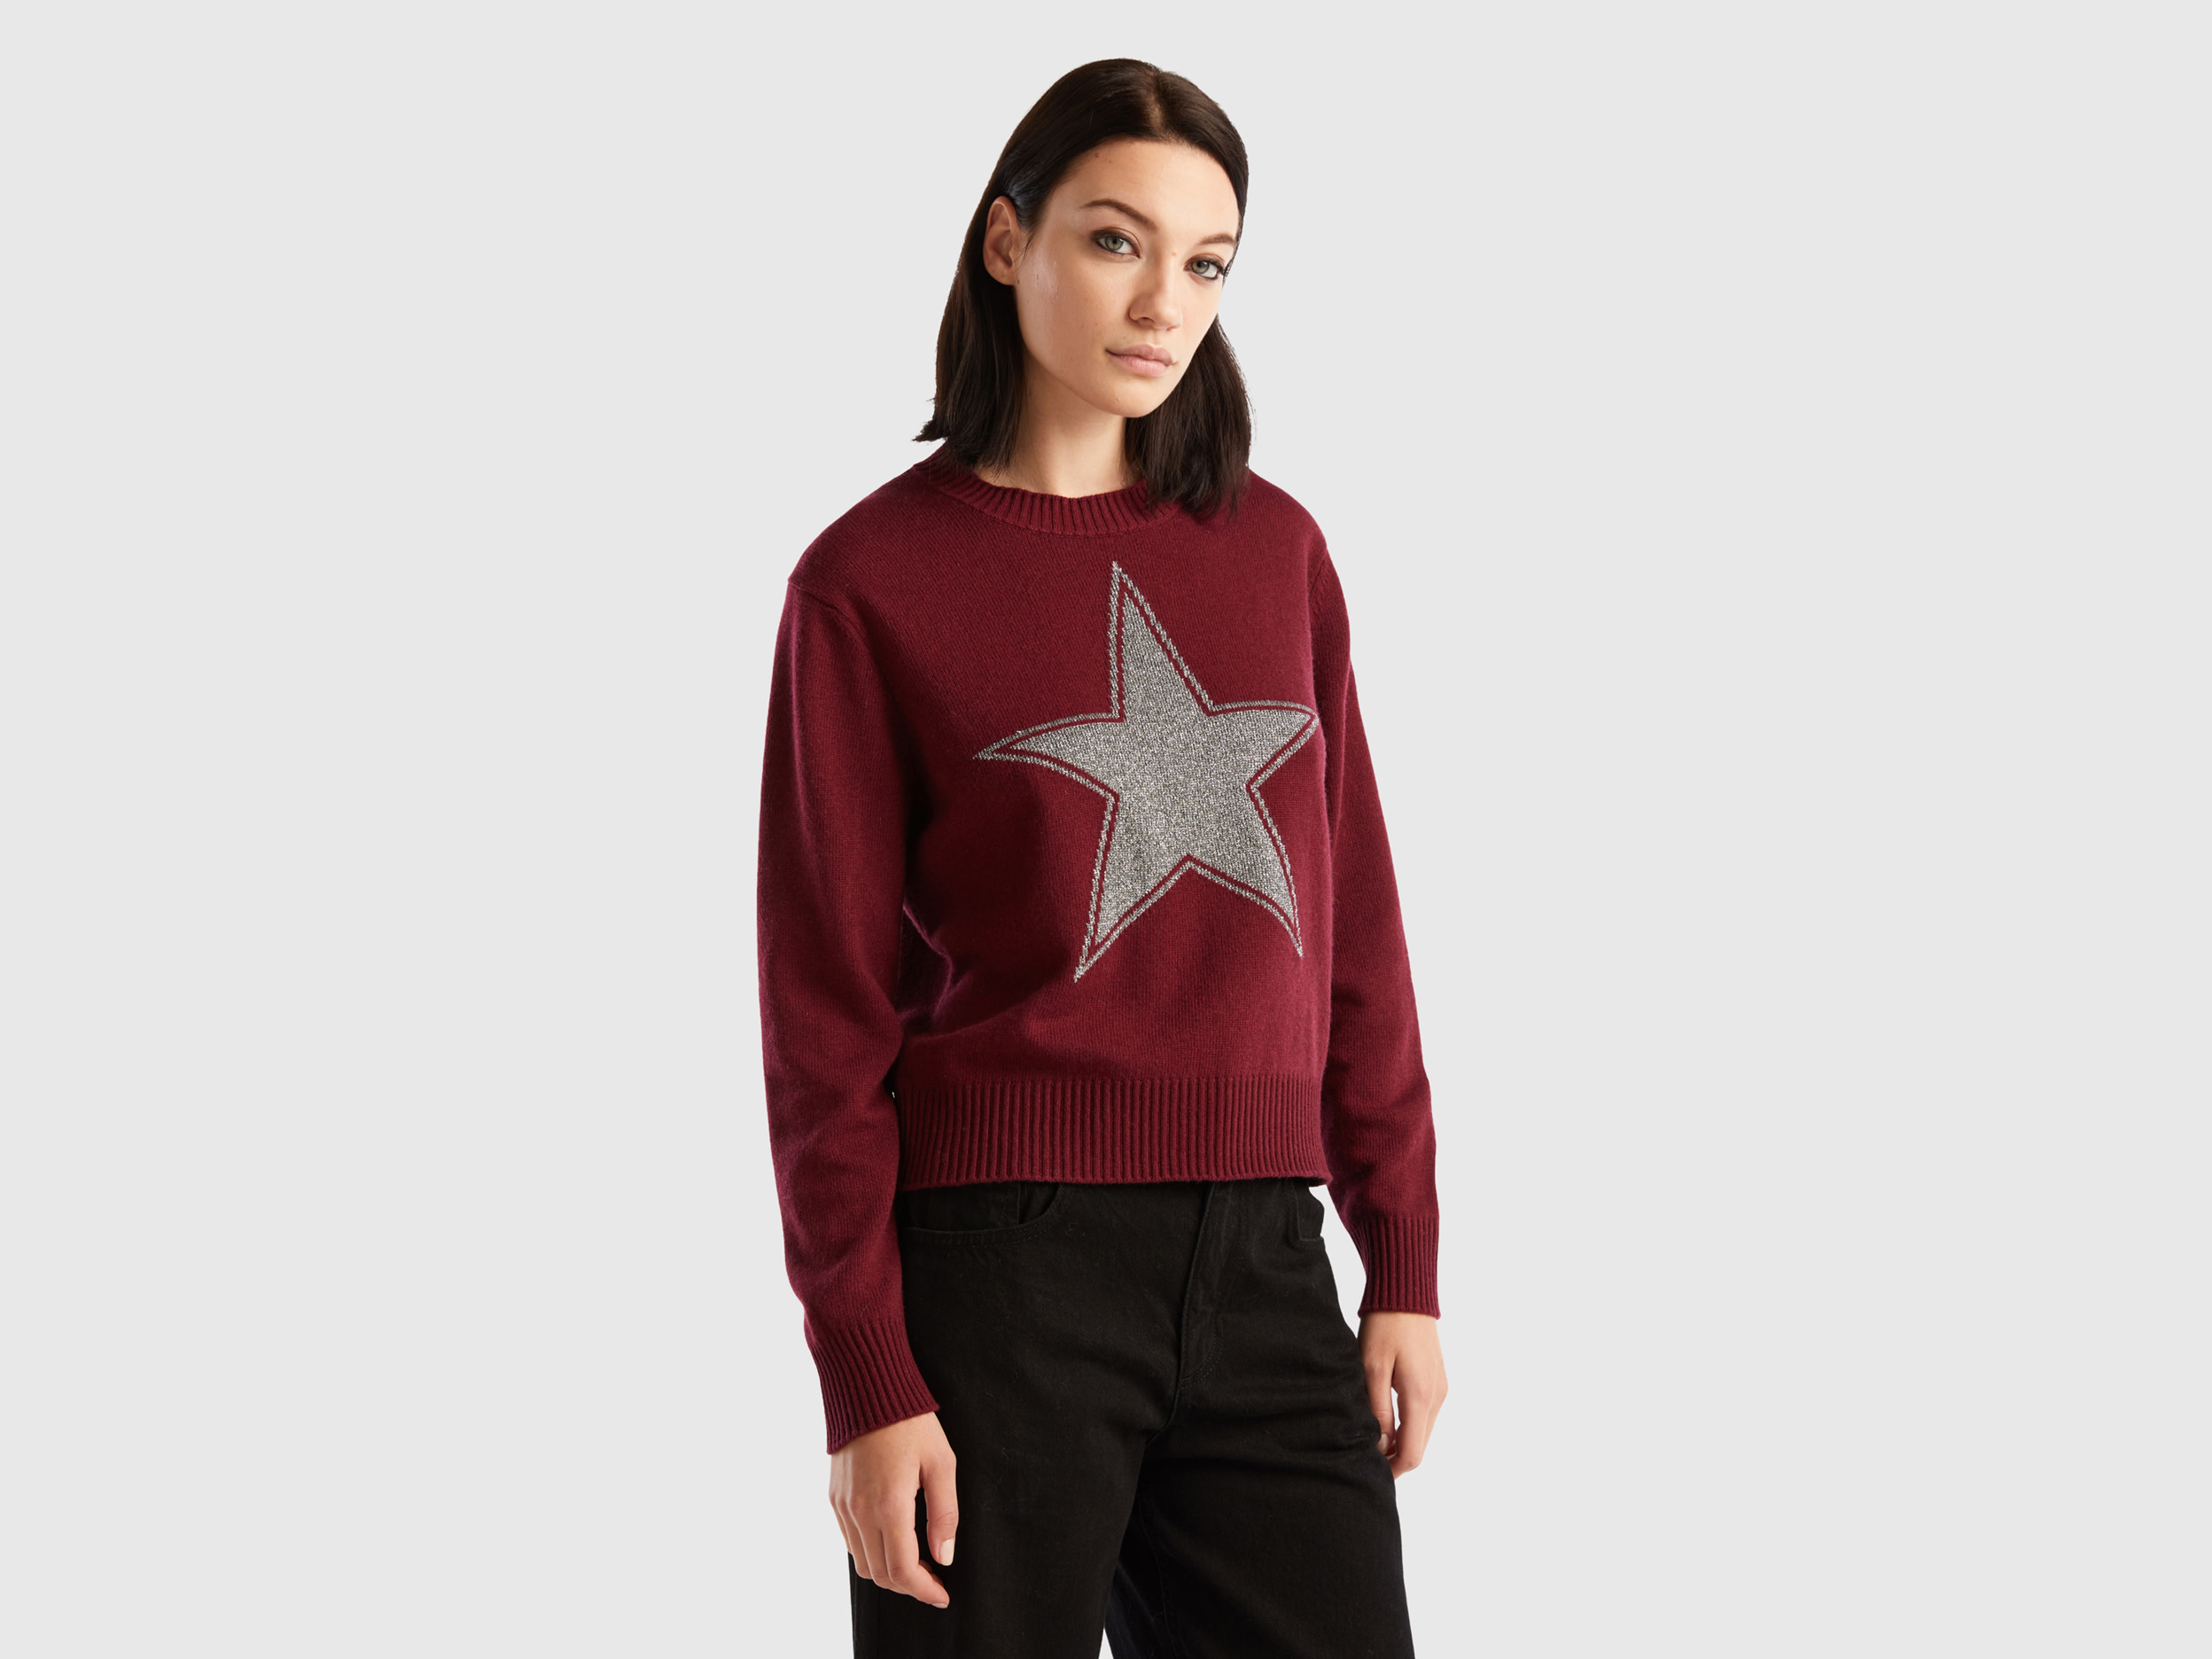 Benetton, Sweater With Lurex Star, size M, Burgundy, Women